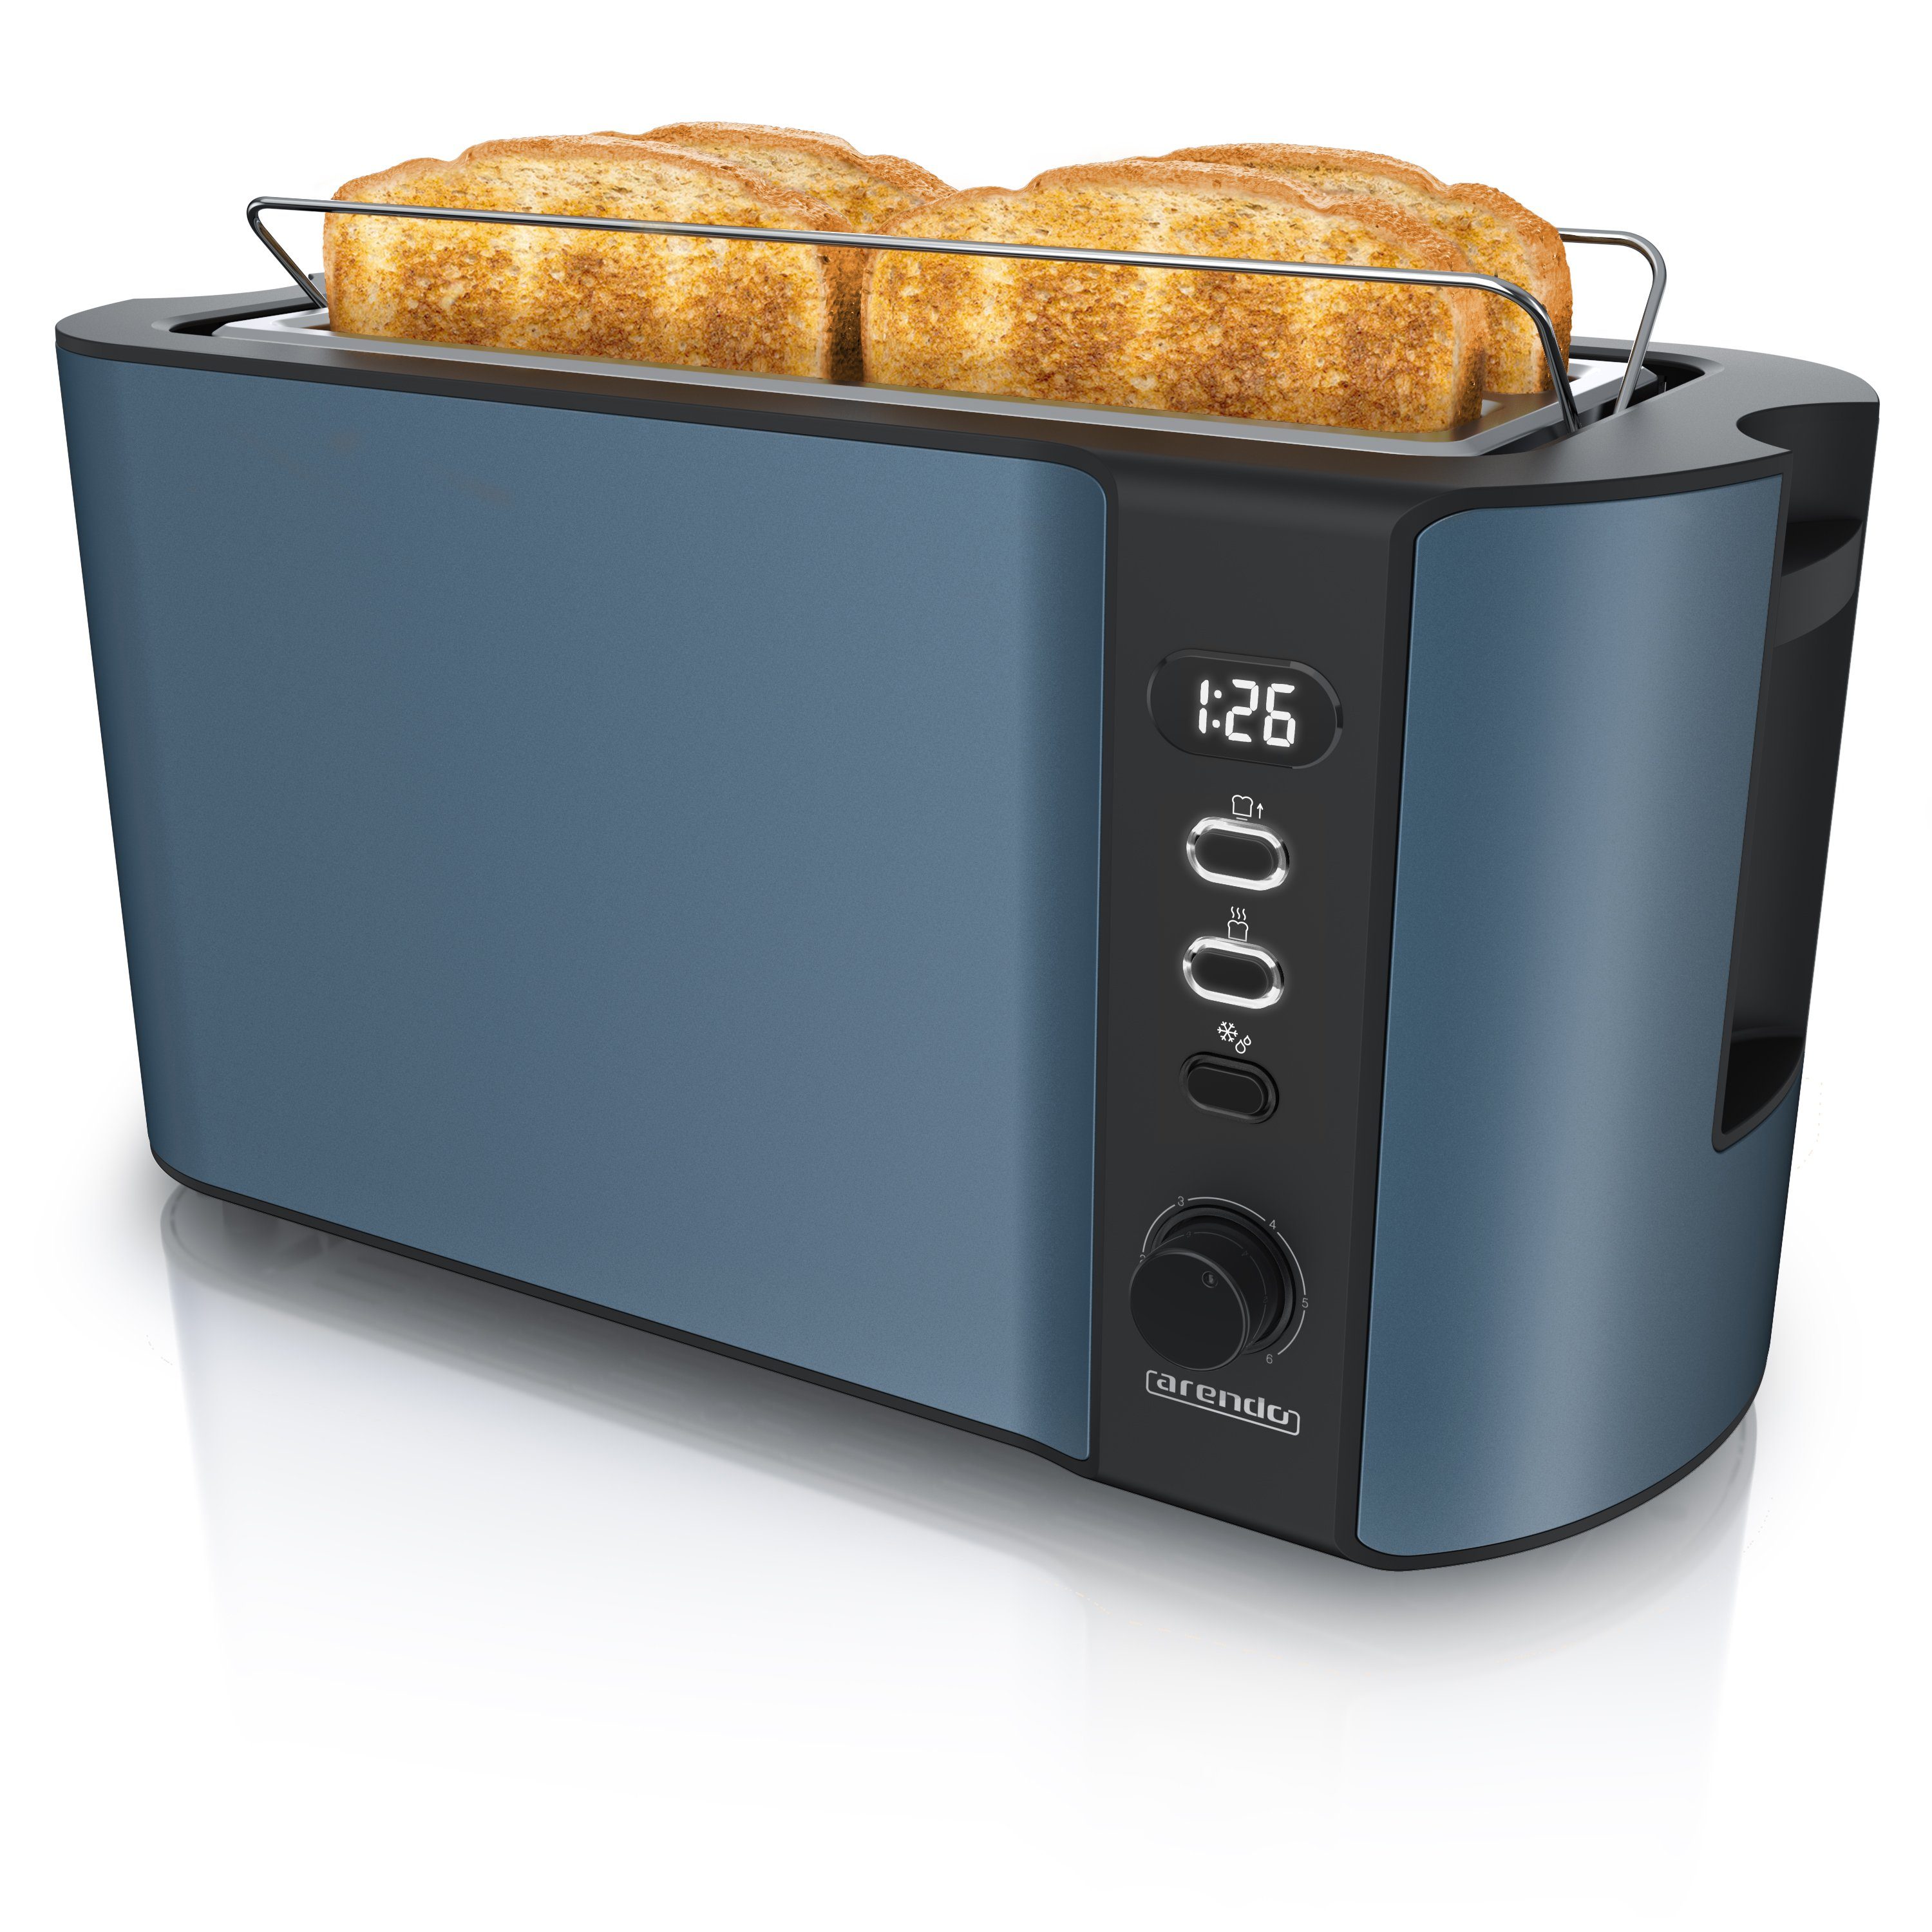 4 Arendo Toaster, Brötchenaufsatz, Display Wärmeisolierendes Langschlitz, für 2 Scheiben, Gehäuse, W, lange Schlitze, 1500 blau